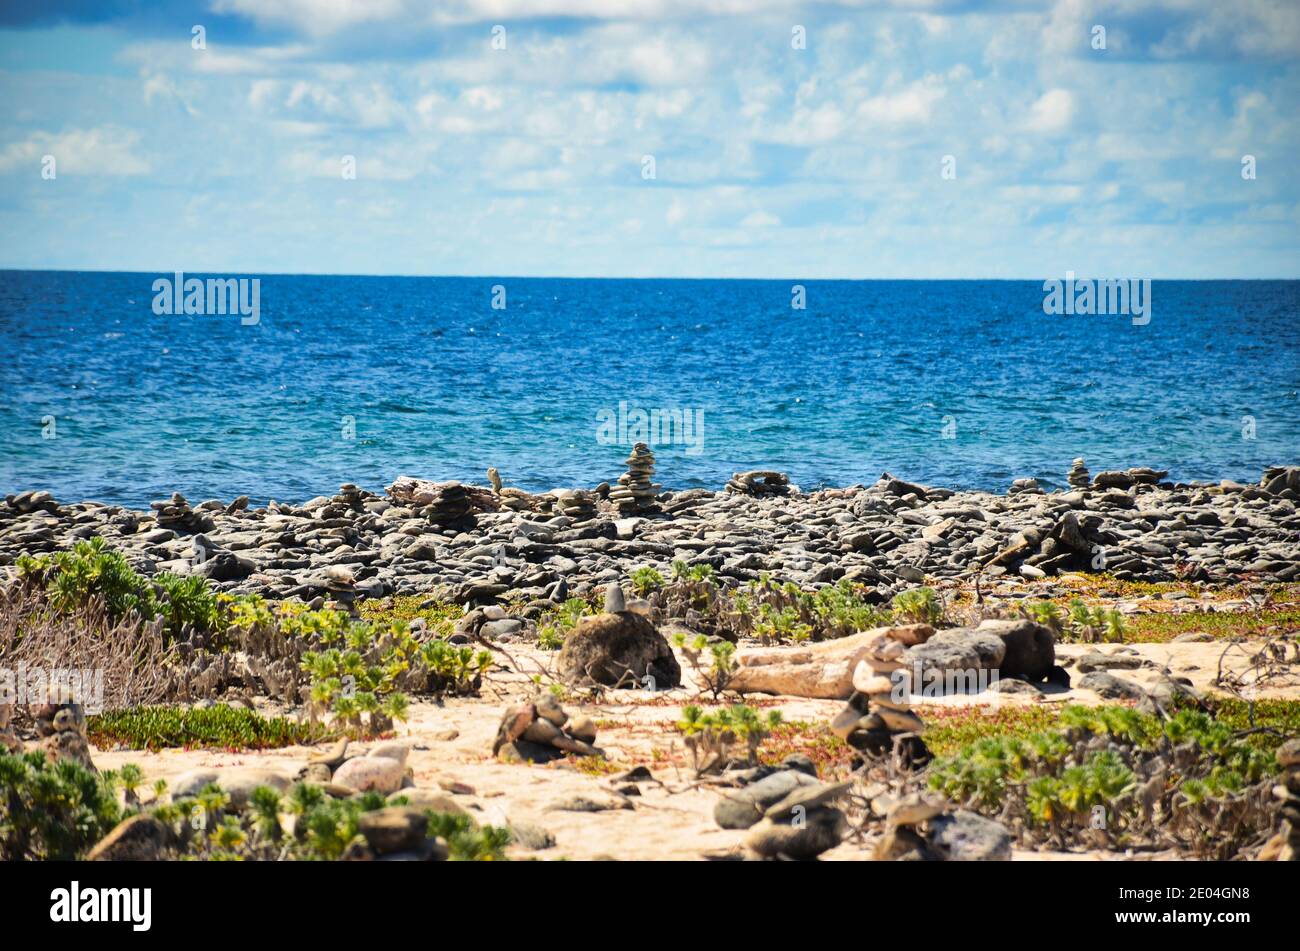 rocce sulla spiaggia, cairn al mare dei caraibi, isola di bonaire, antille abc isola paesi bassi, pietra al mare, arte sulla spiaggia Foto Stock